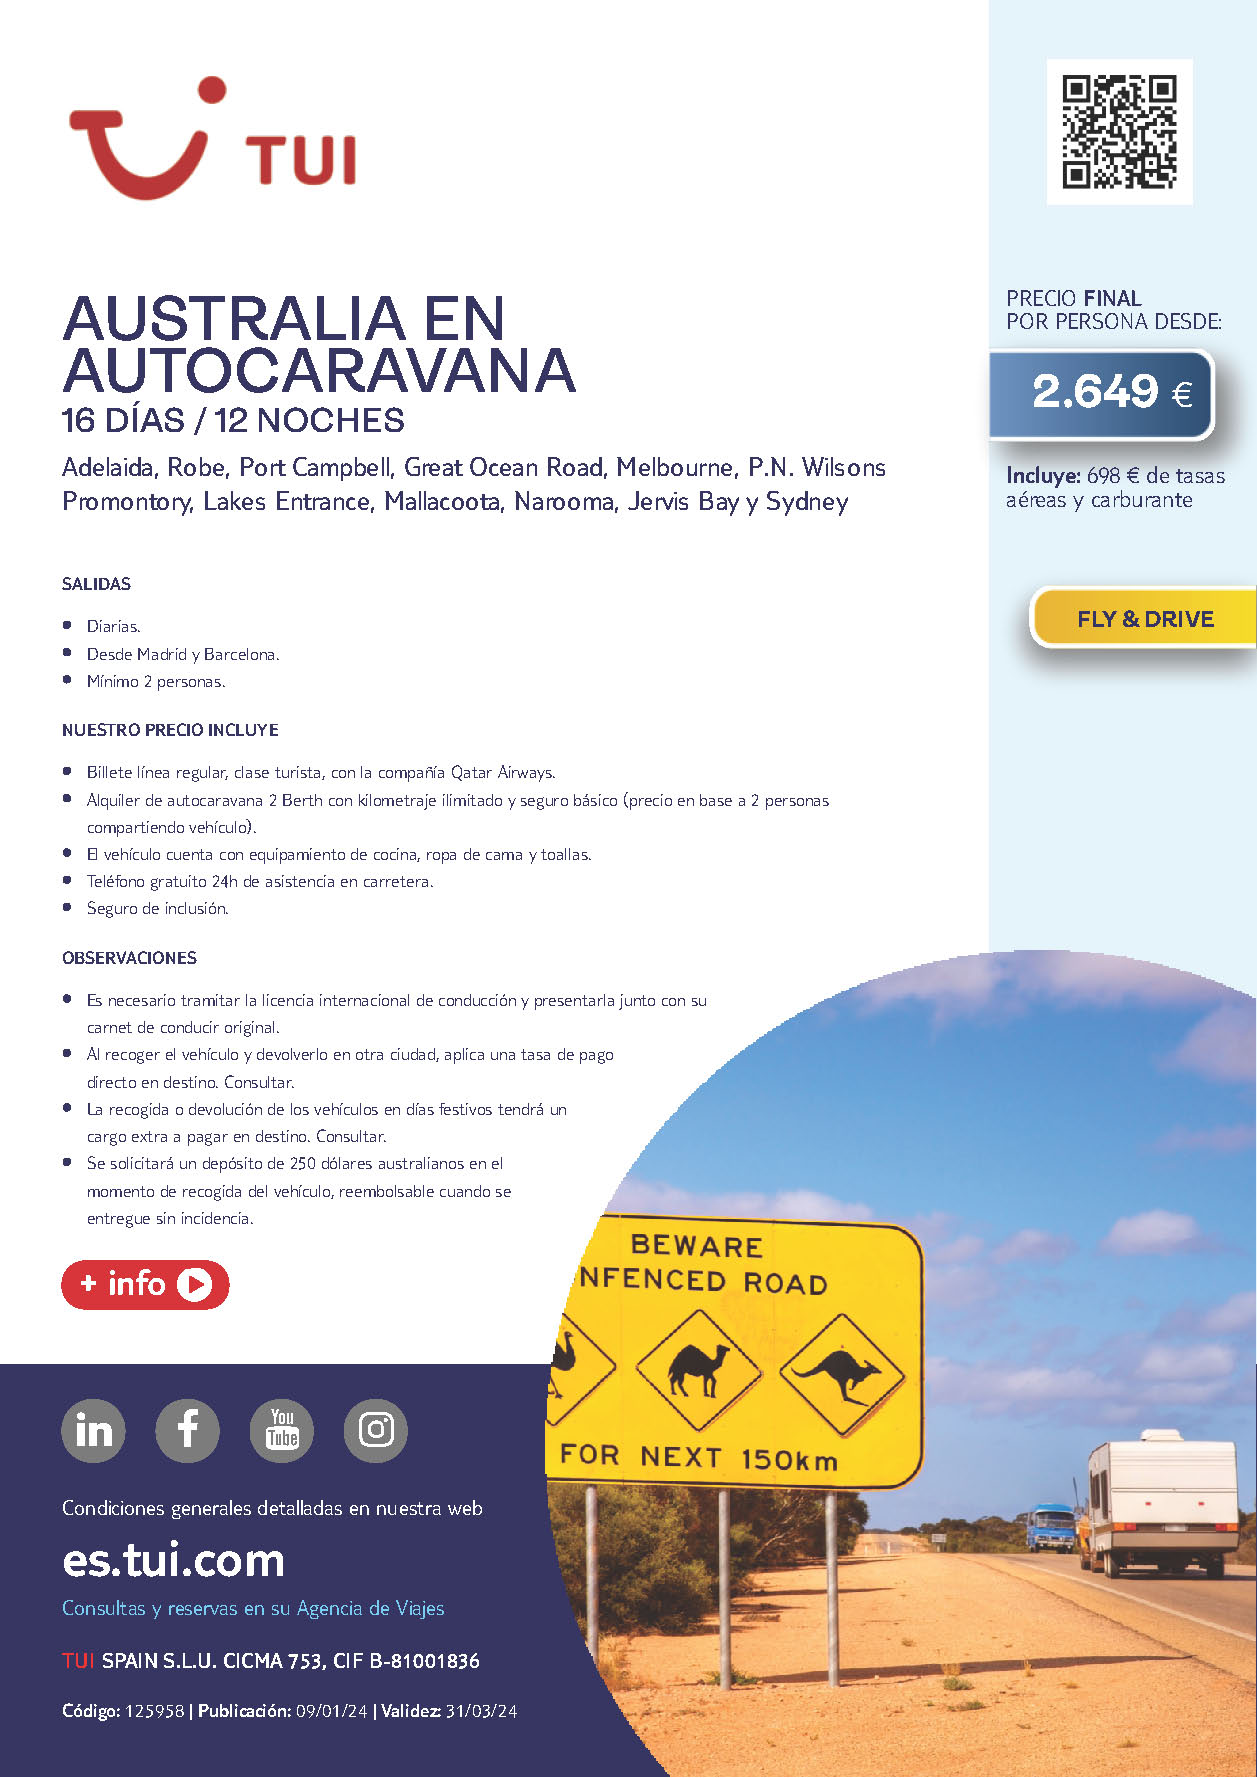 Oferta TUI circuito Australia en Autocaravana Fly and Drive 16 dias 2024 salidas desde Madrid y Barcelona vuelos Qatar Airways